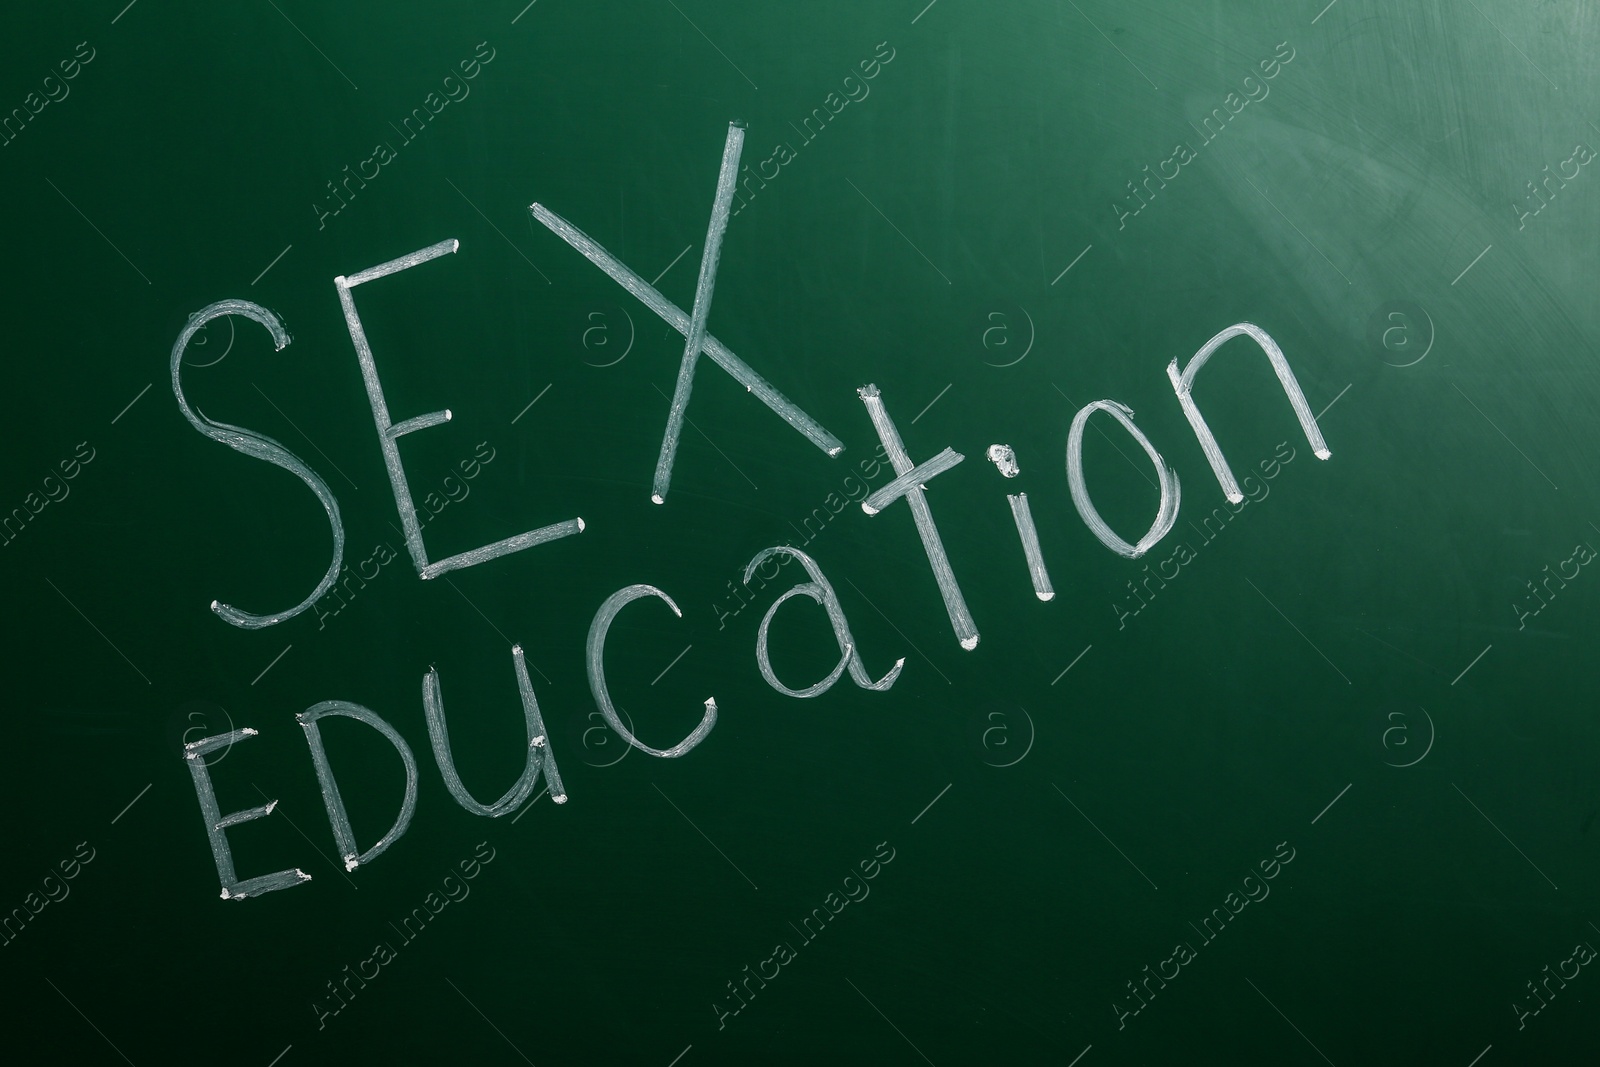 Photo of Phrase "SEX EDUCATION" written on green chalkboard